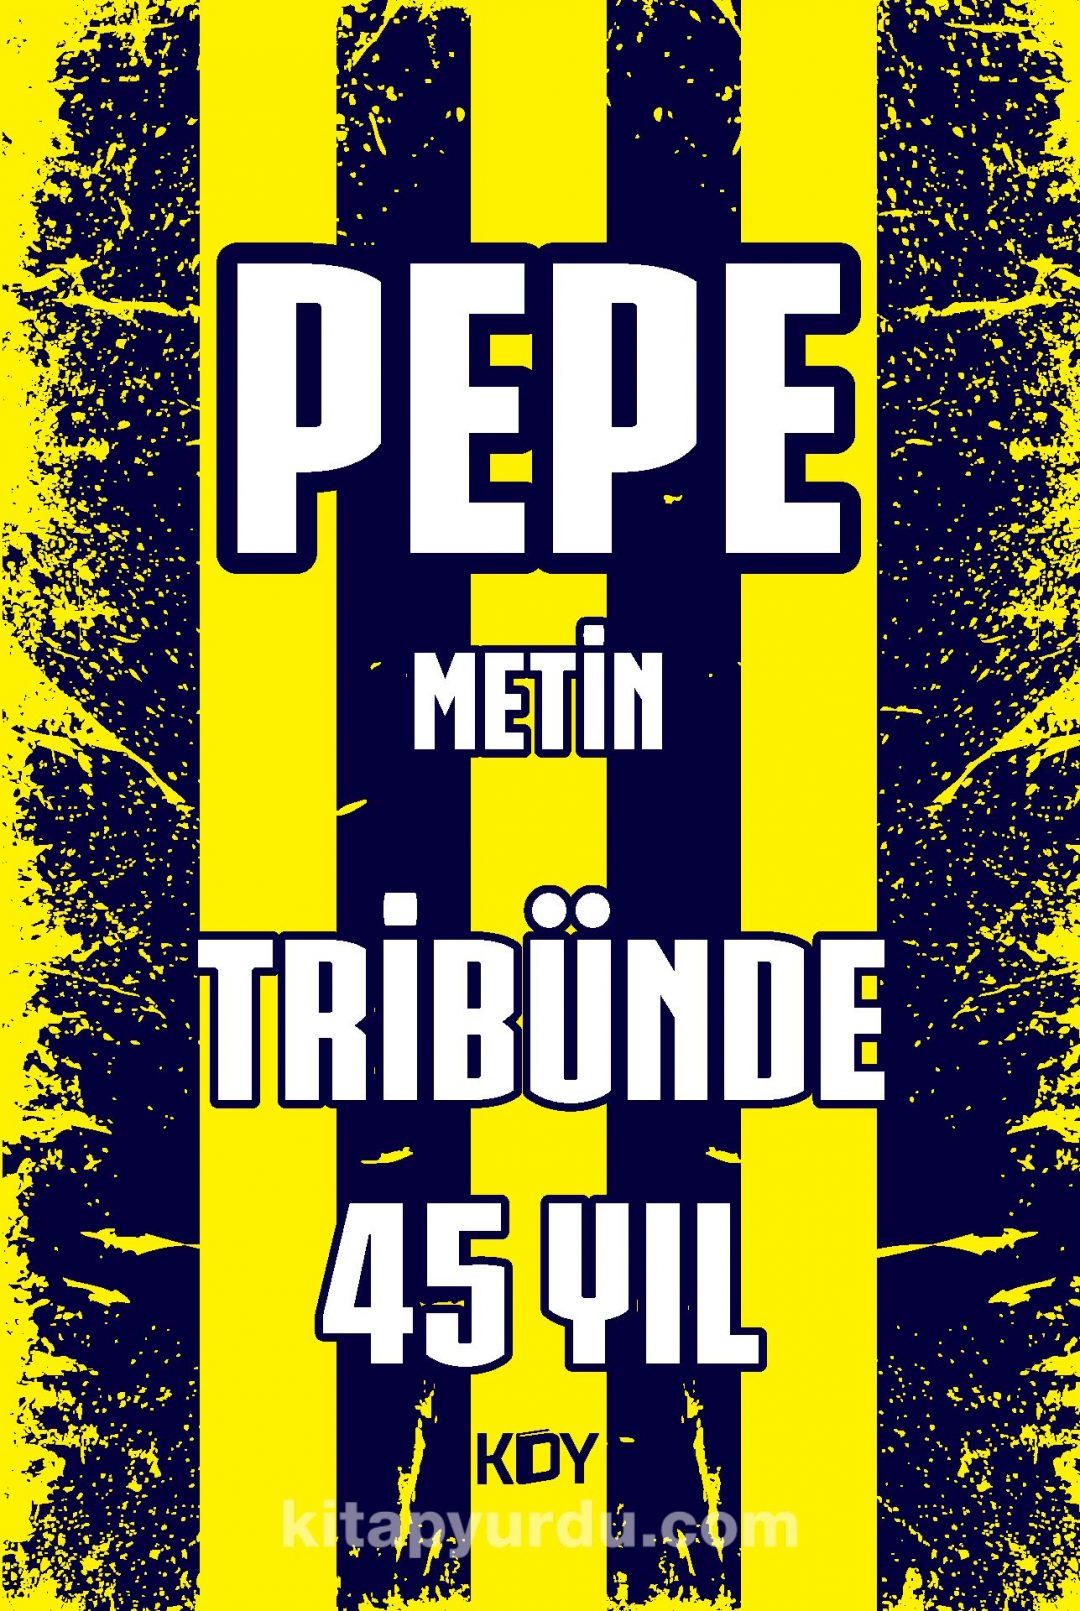 Pepe Metin